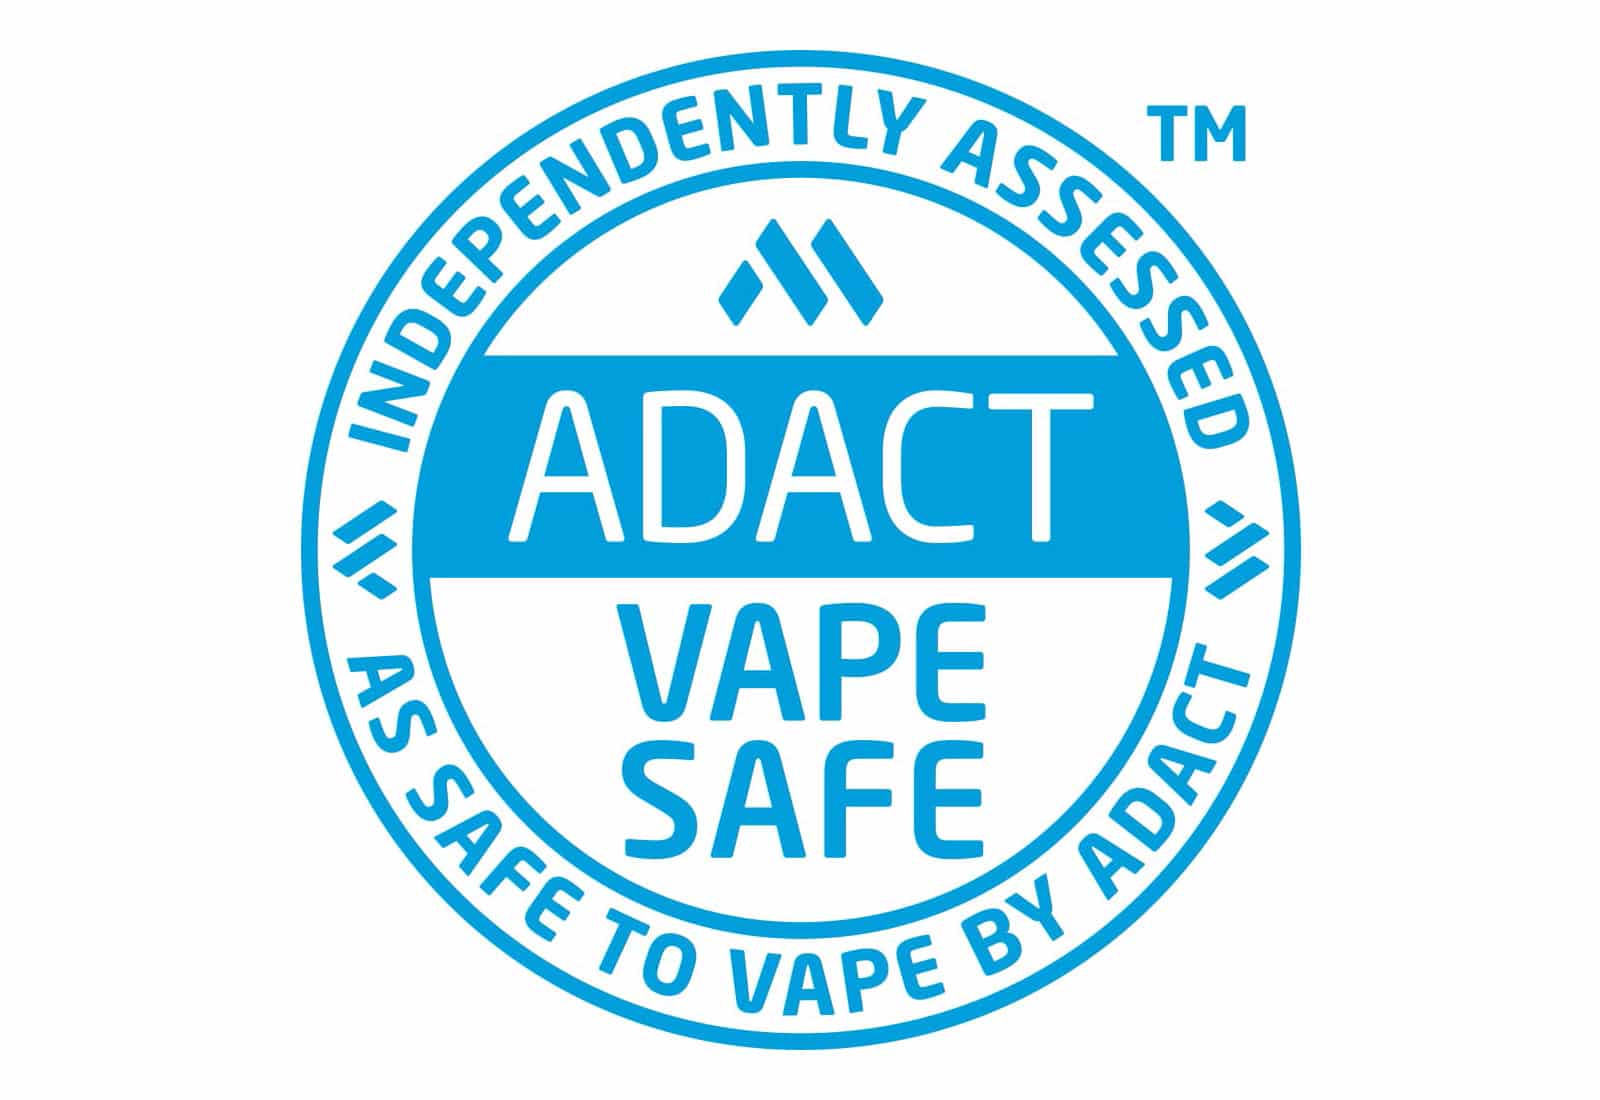 ADACT Vape Safe